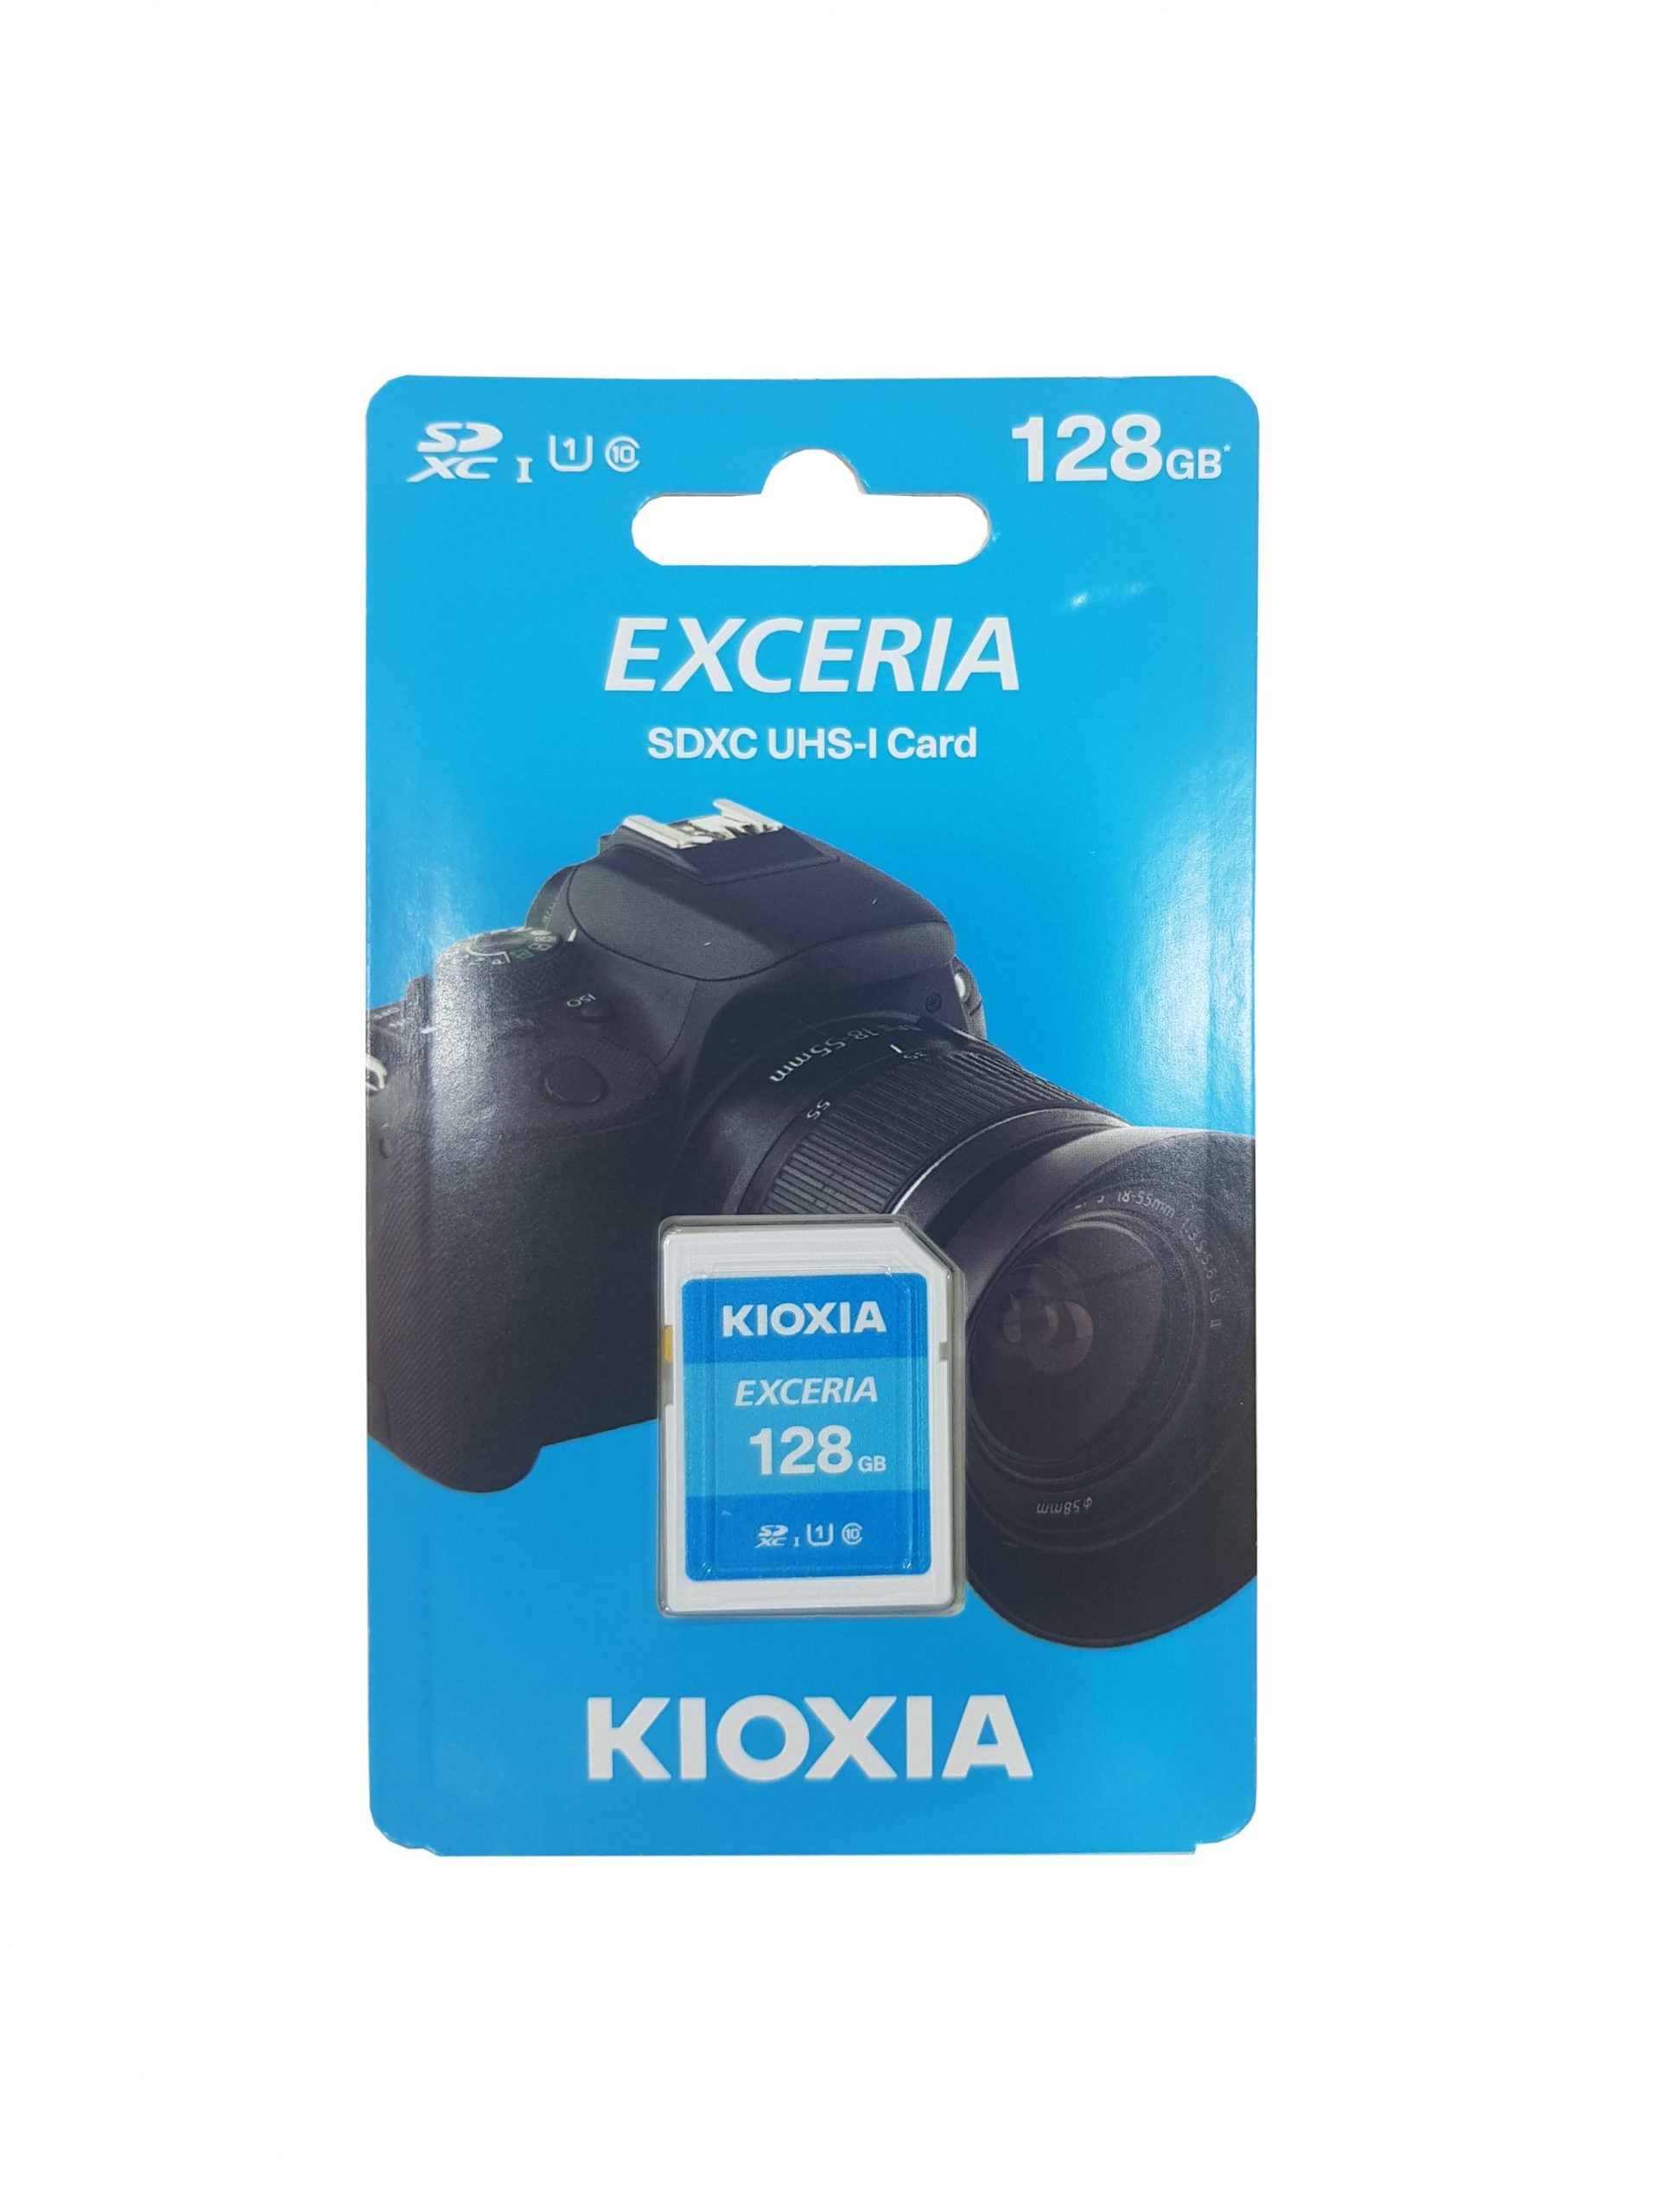 KIOXIA Exceria SDHC UHS-1 Card 128GB